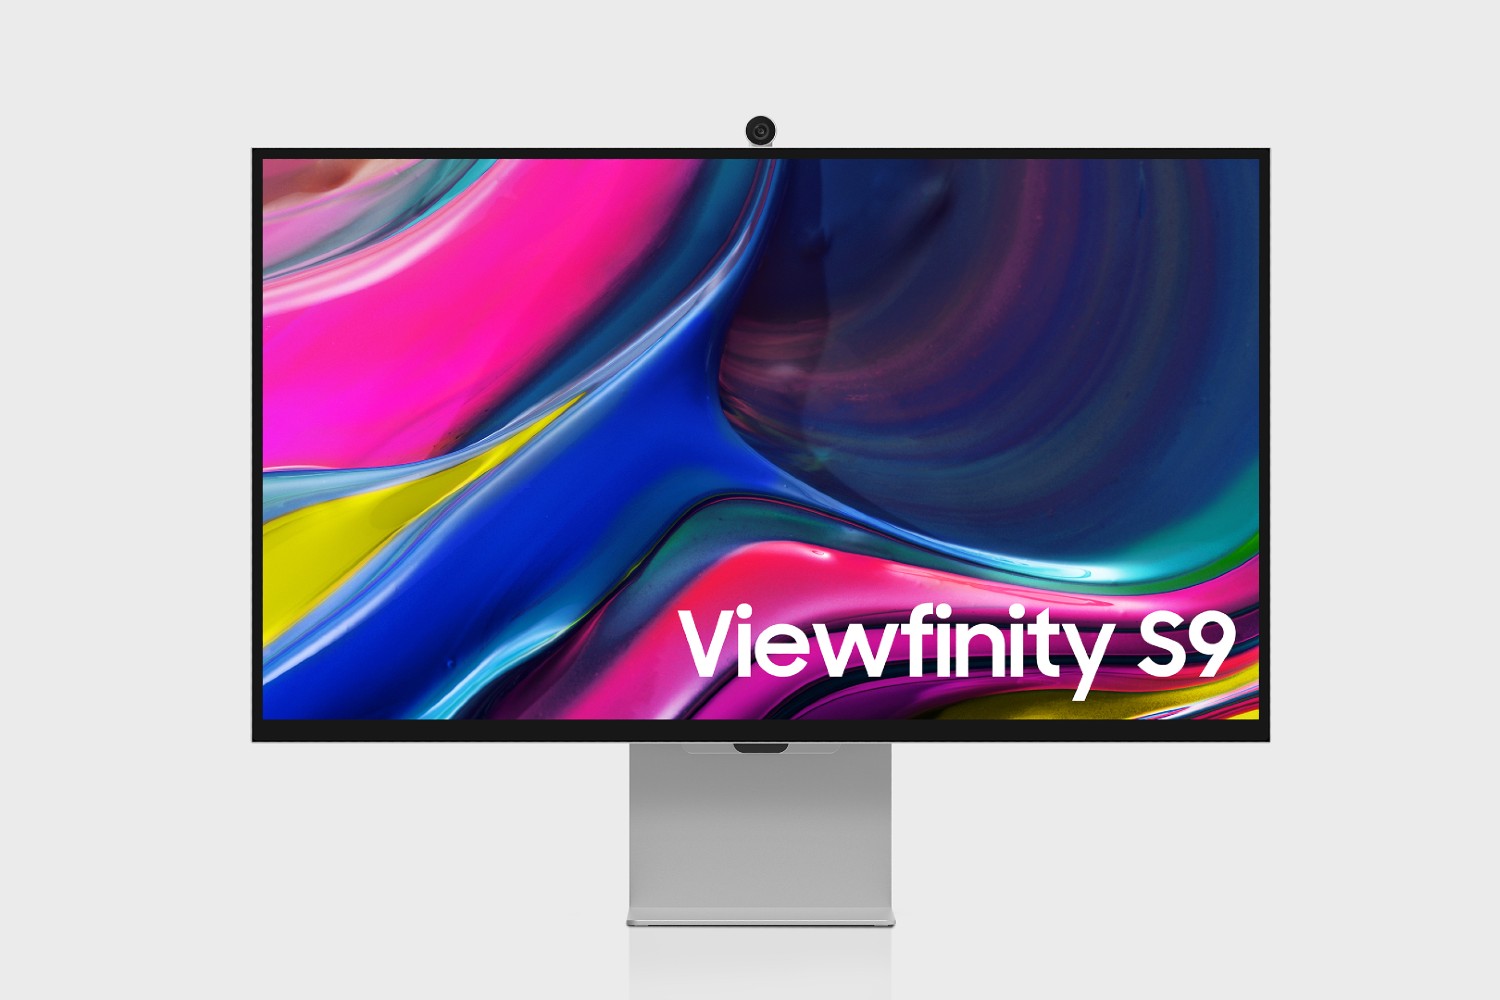 Il monitor Samsung Viewfinity S9 con la sua webcam in cima.